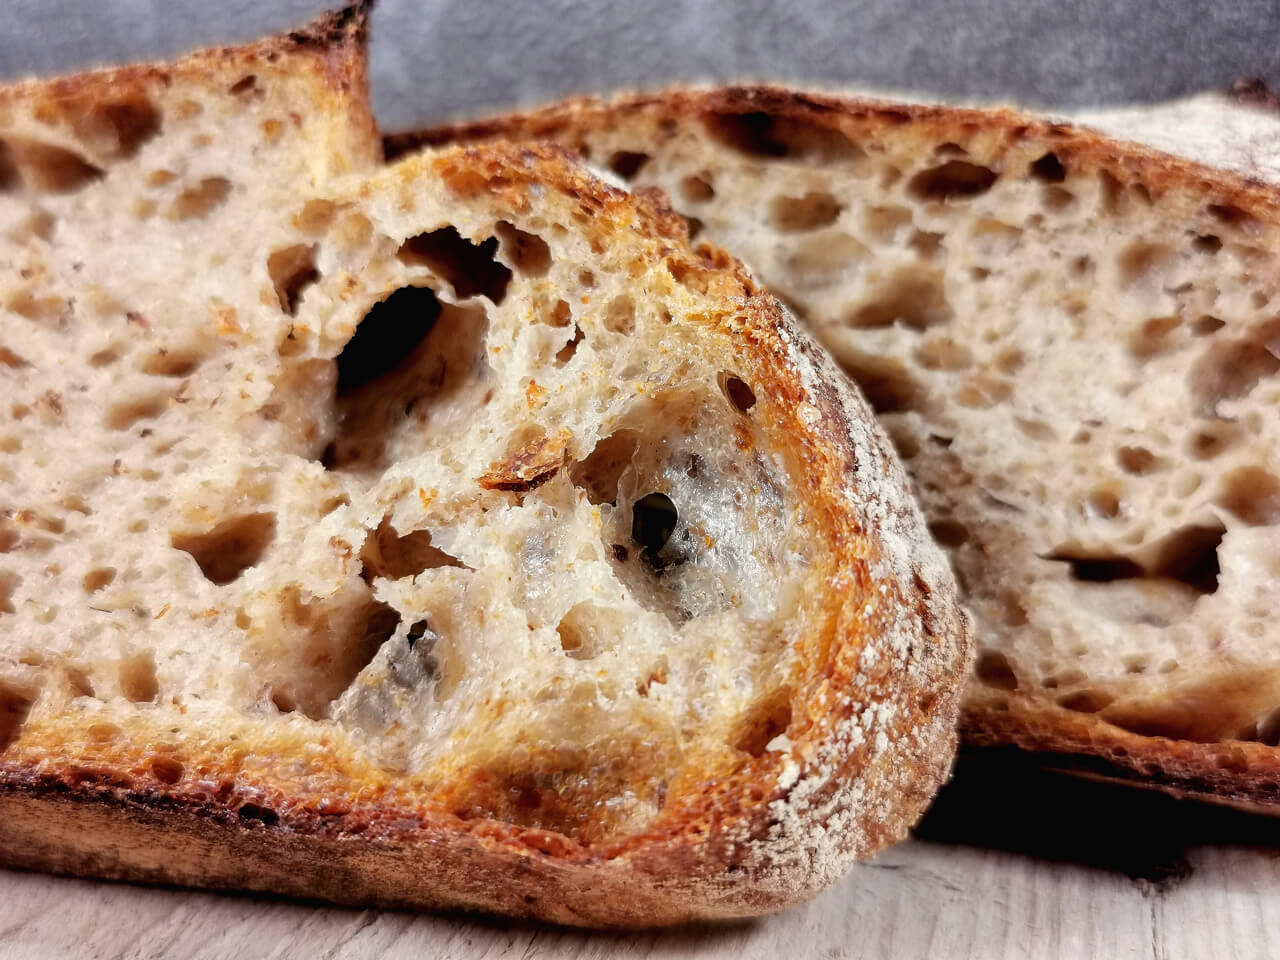 Altbrot-Sauerteig-Brot - Brot mit viel altem Brot [Rezept]